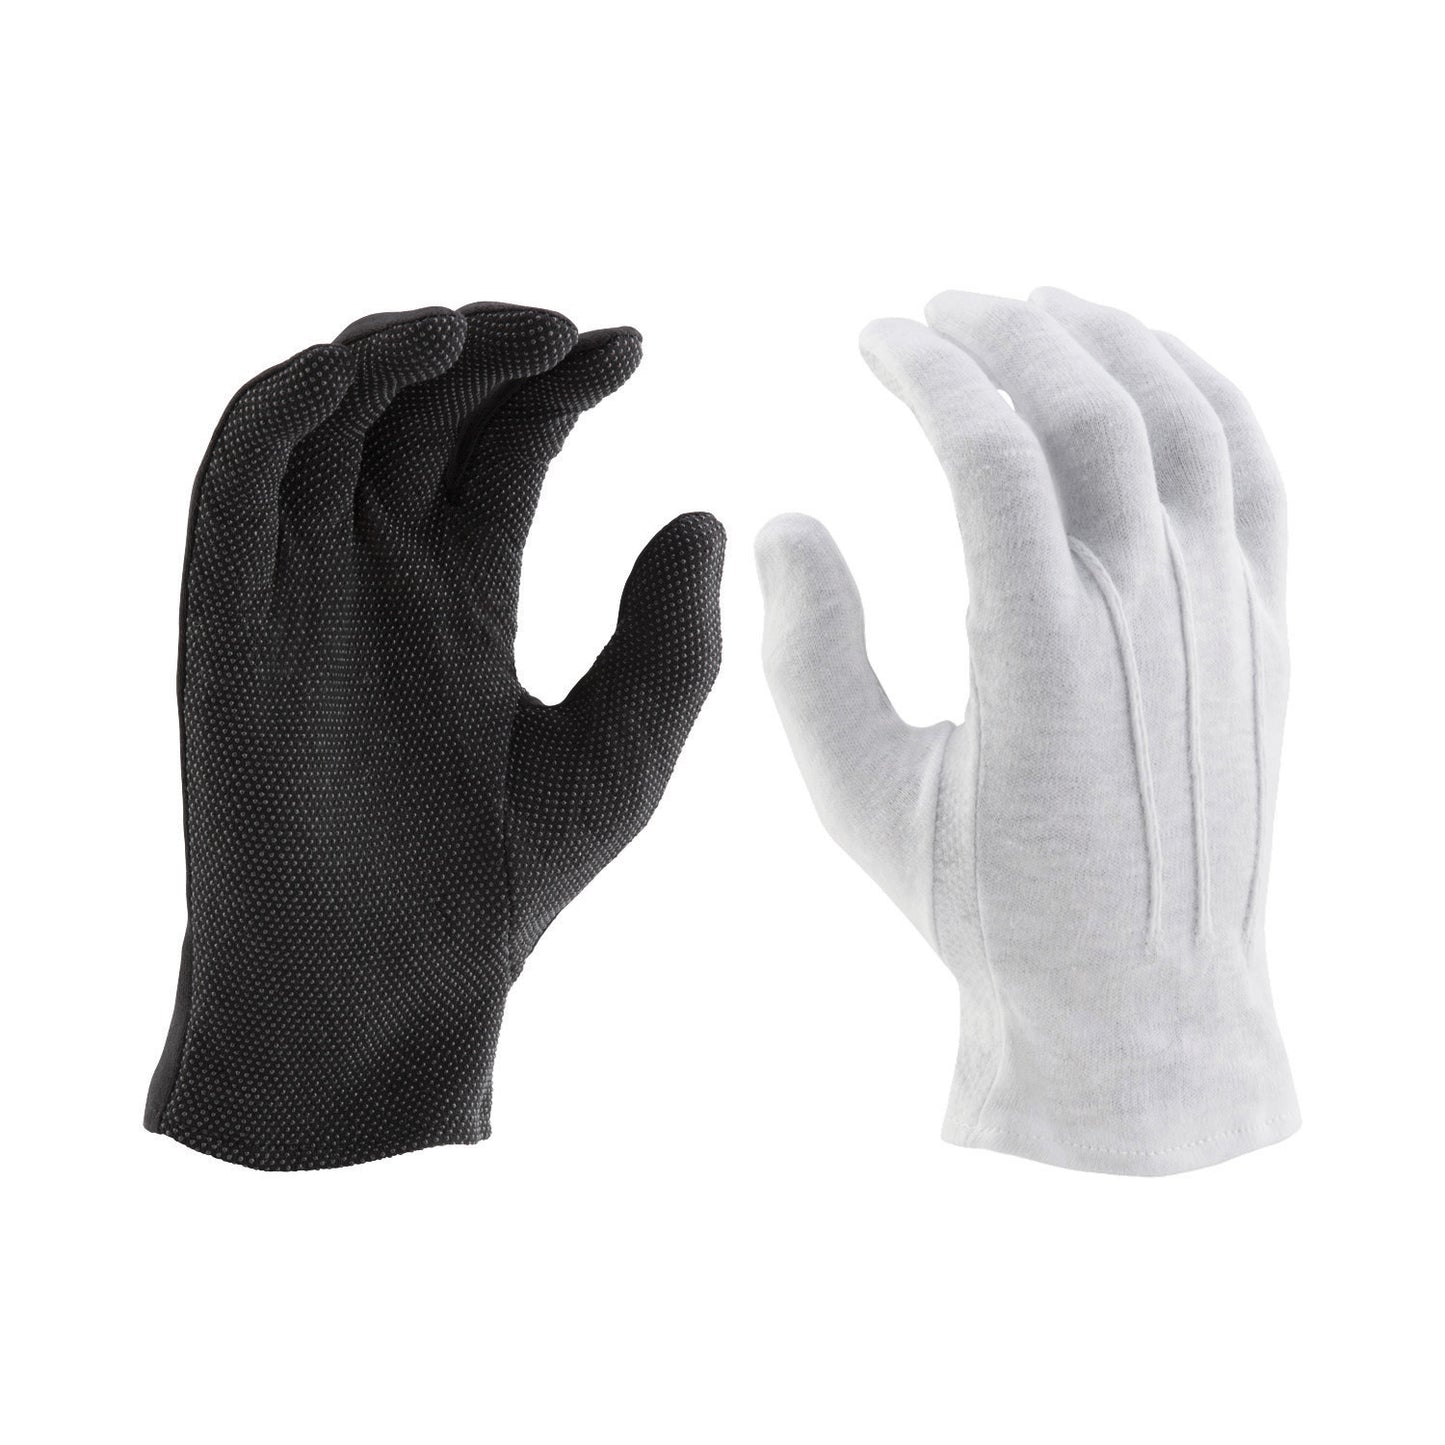 StylePlus Sure Grip Gloves